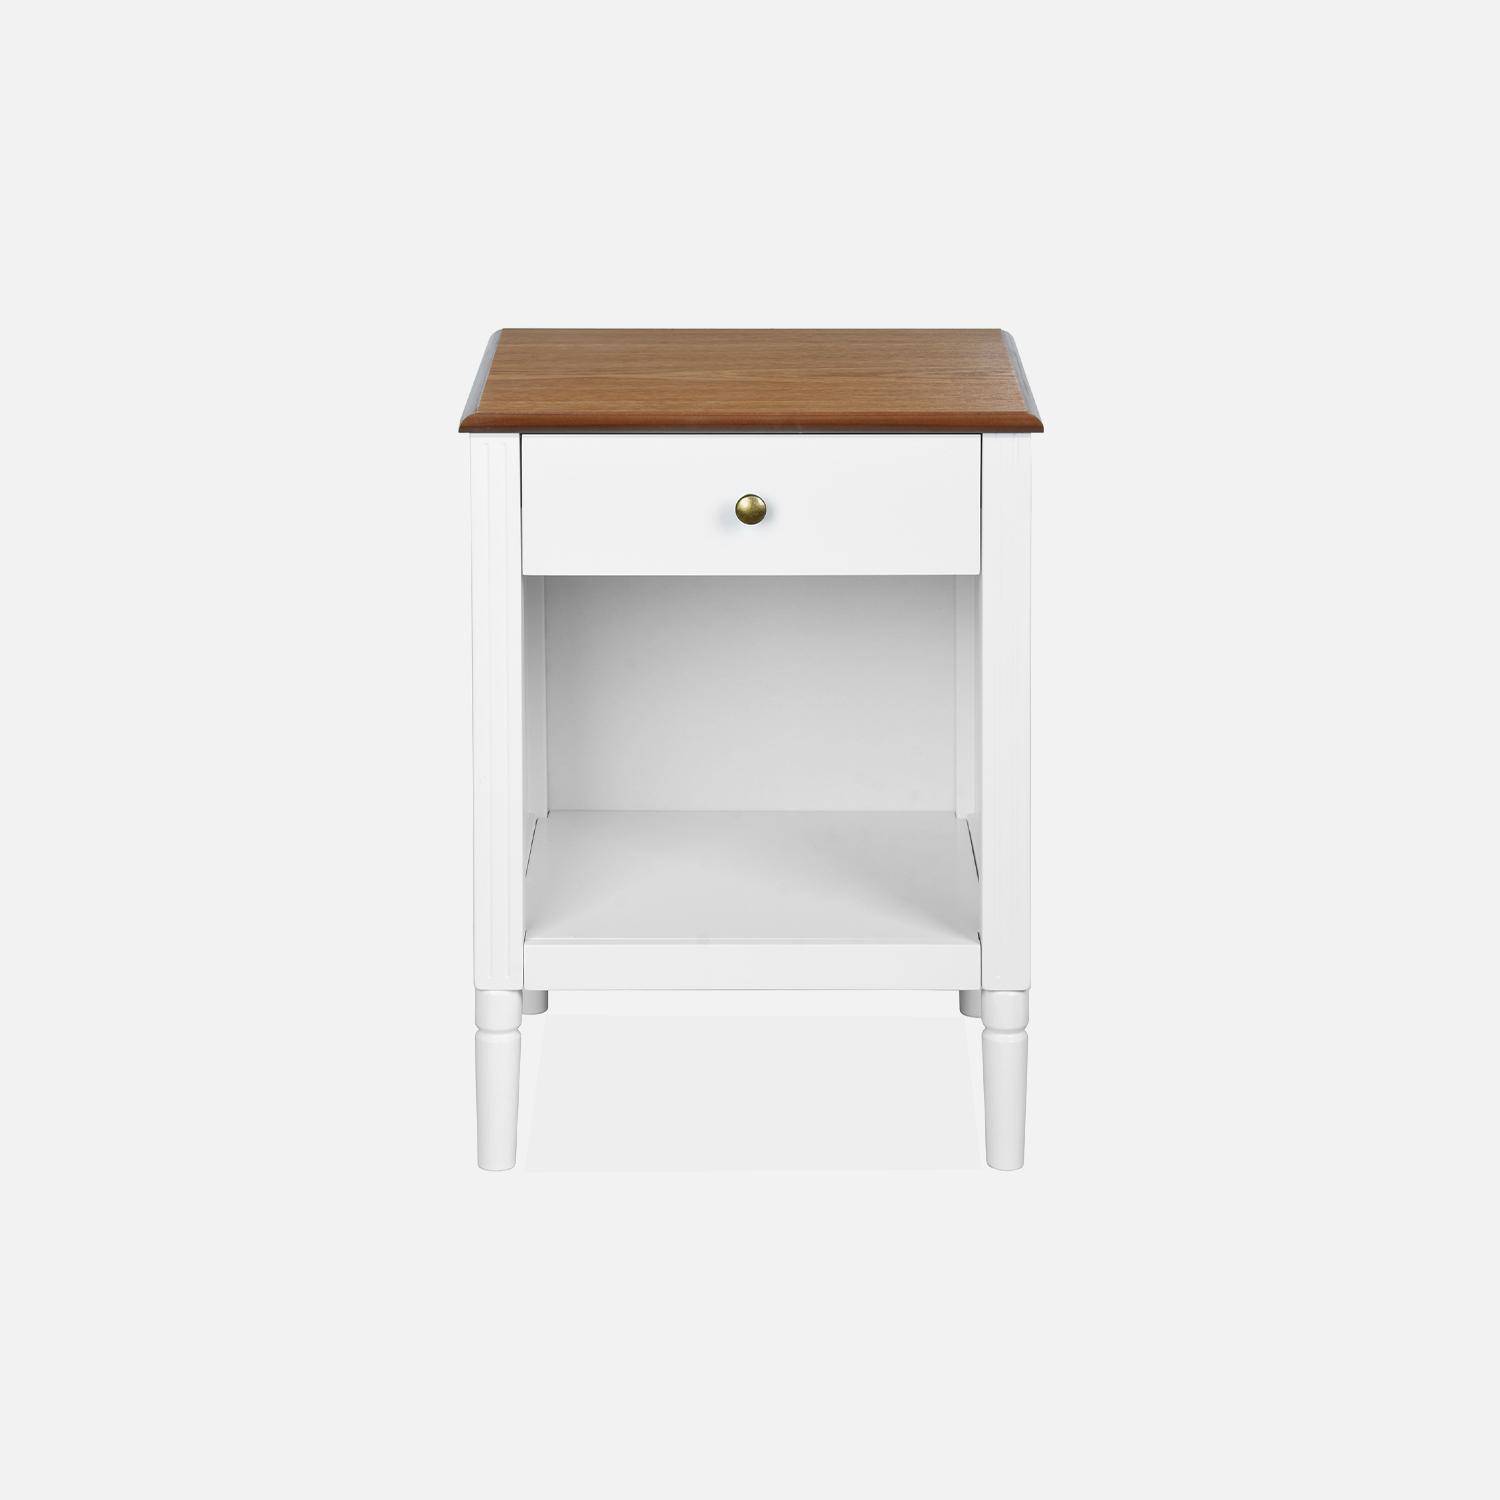 Table de chevet en placage frêne, blanc et bois, pieds en pin, 1 tiroir et 1 niche Photo4